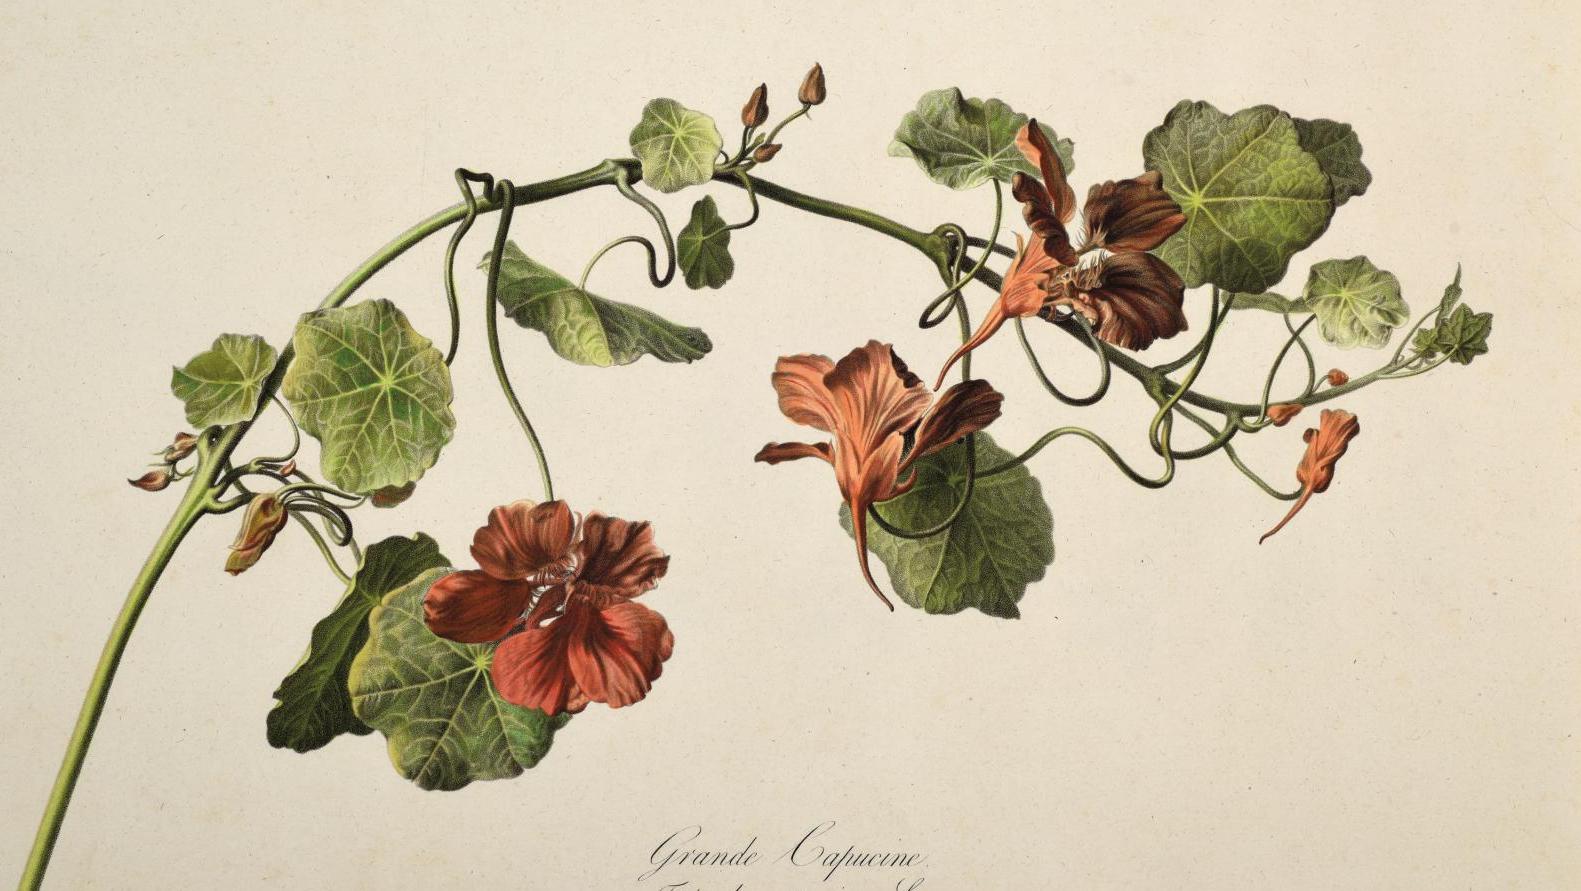 Gérard Van Spaendonck (1746-1822), Fleurs dessinées d’après nature, 1799-1801, suite... L’art floral selon Van Spaendonck